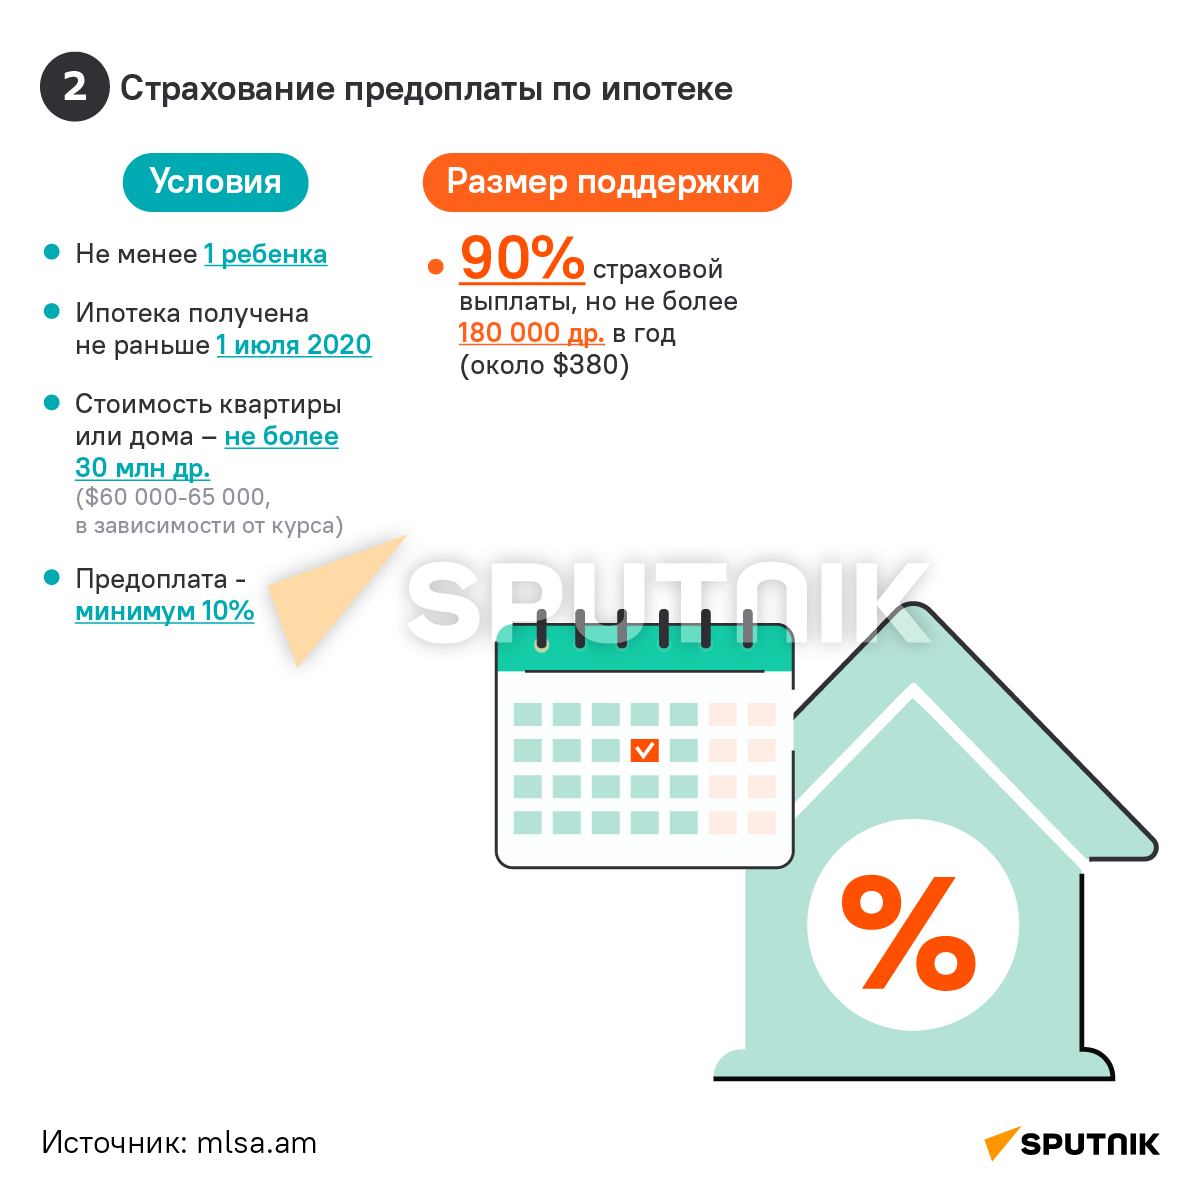 Виды поддержки по ипотеке для молодых семей с детьми в Армении  - Sputnik Армения